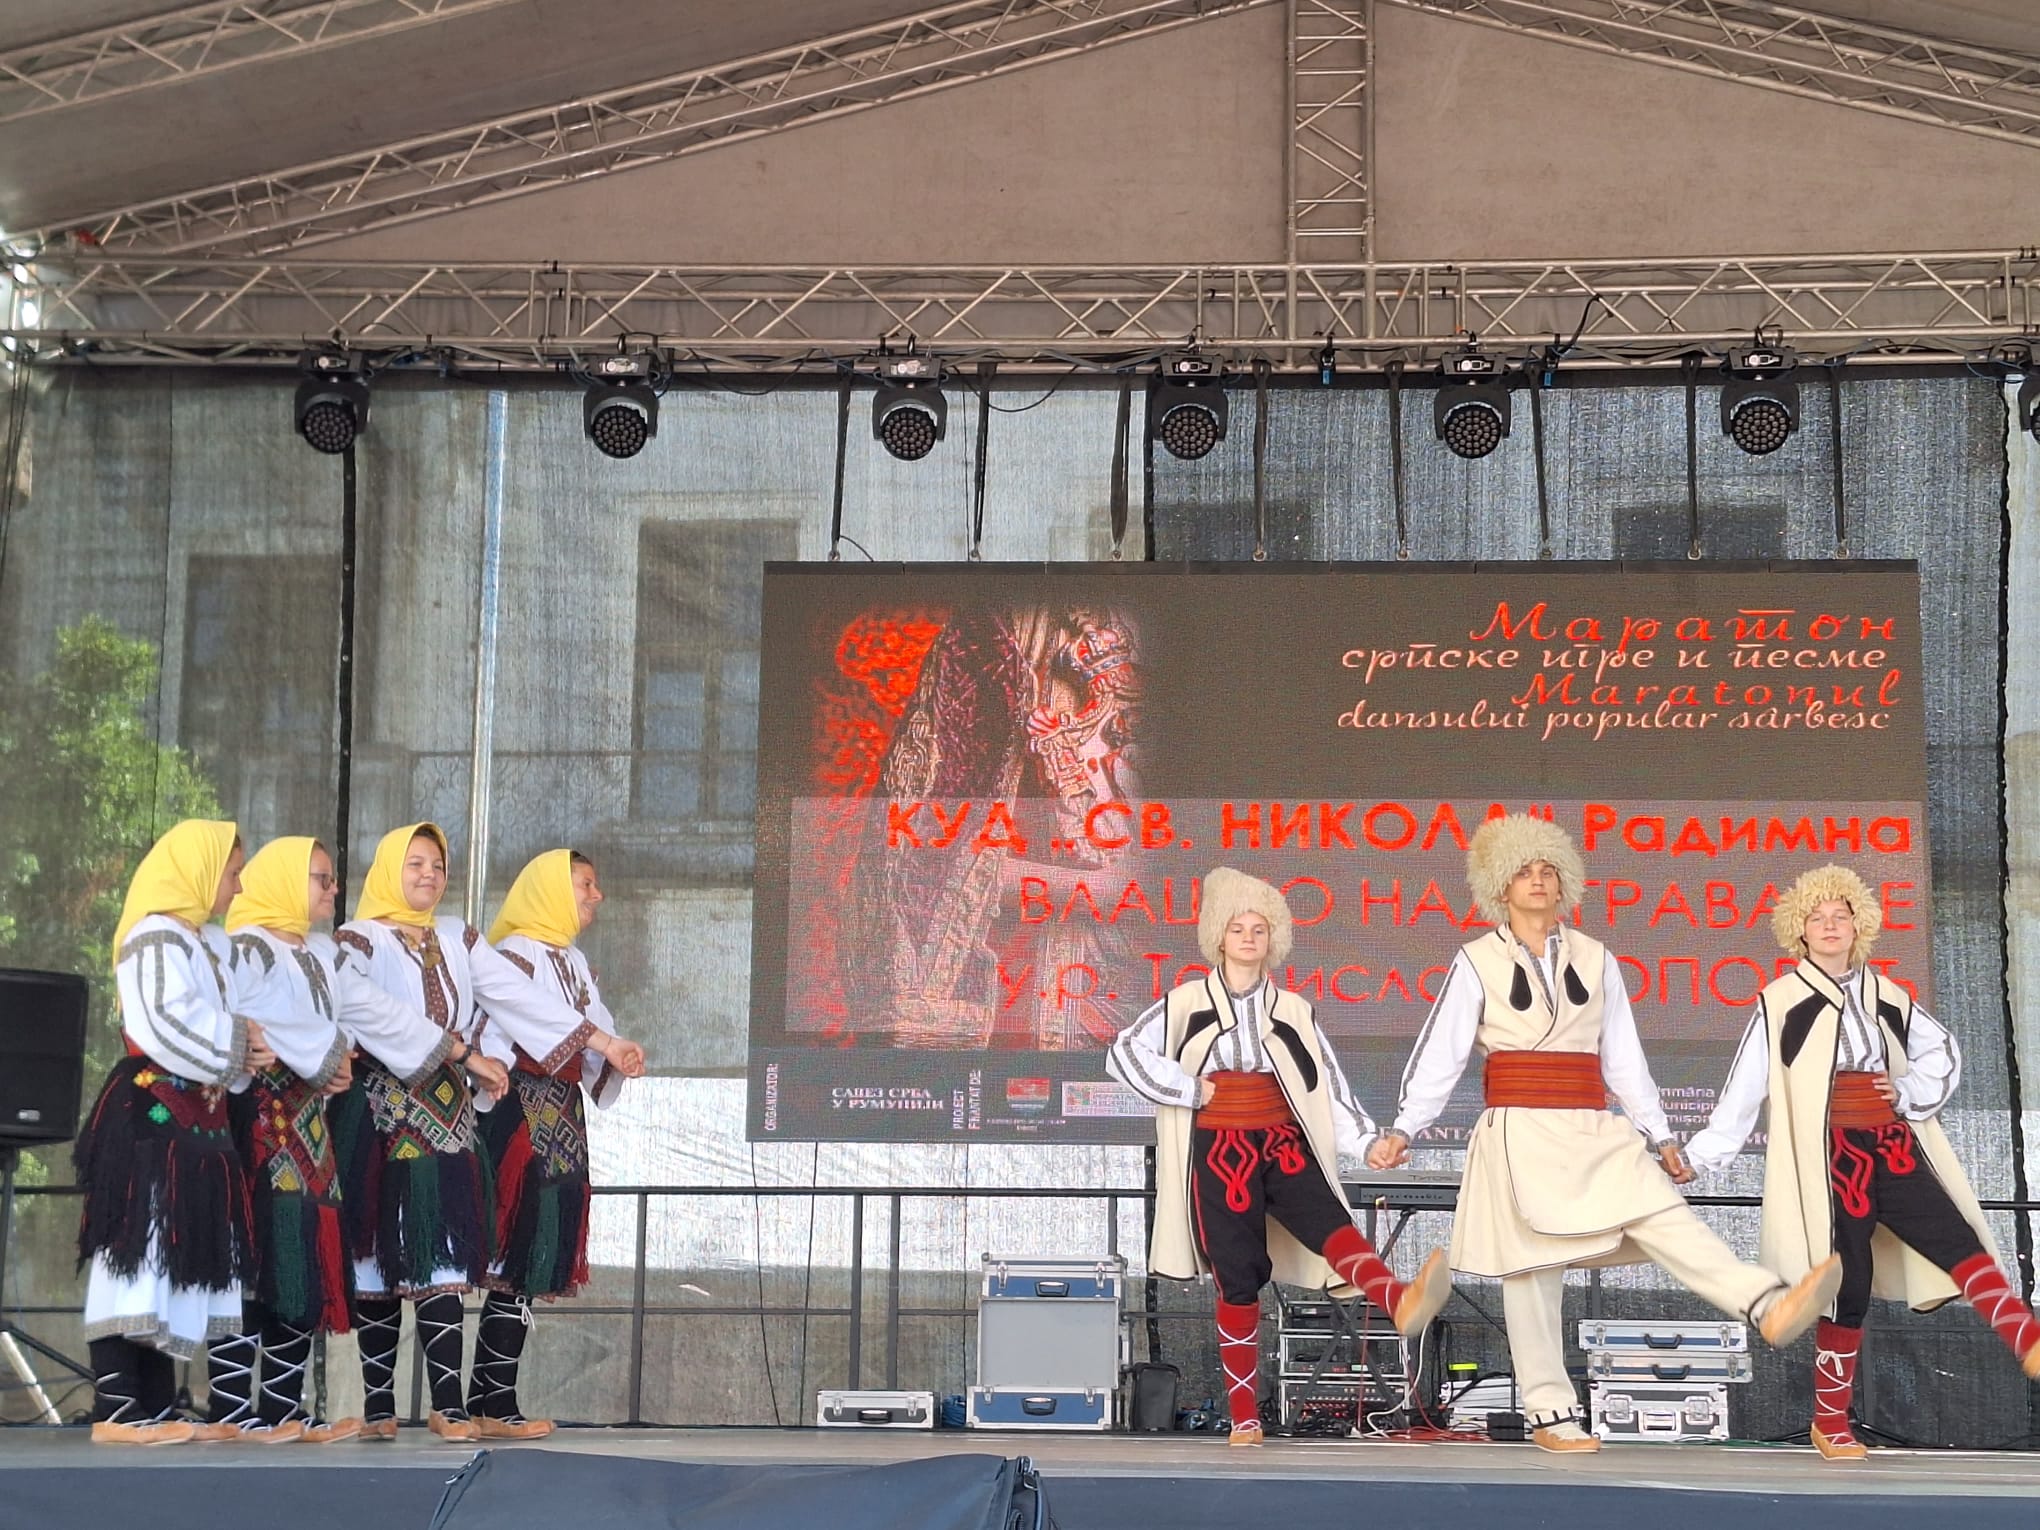 Festivalul Maratonul dansului popular sârbesc (3)